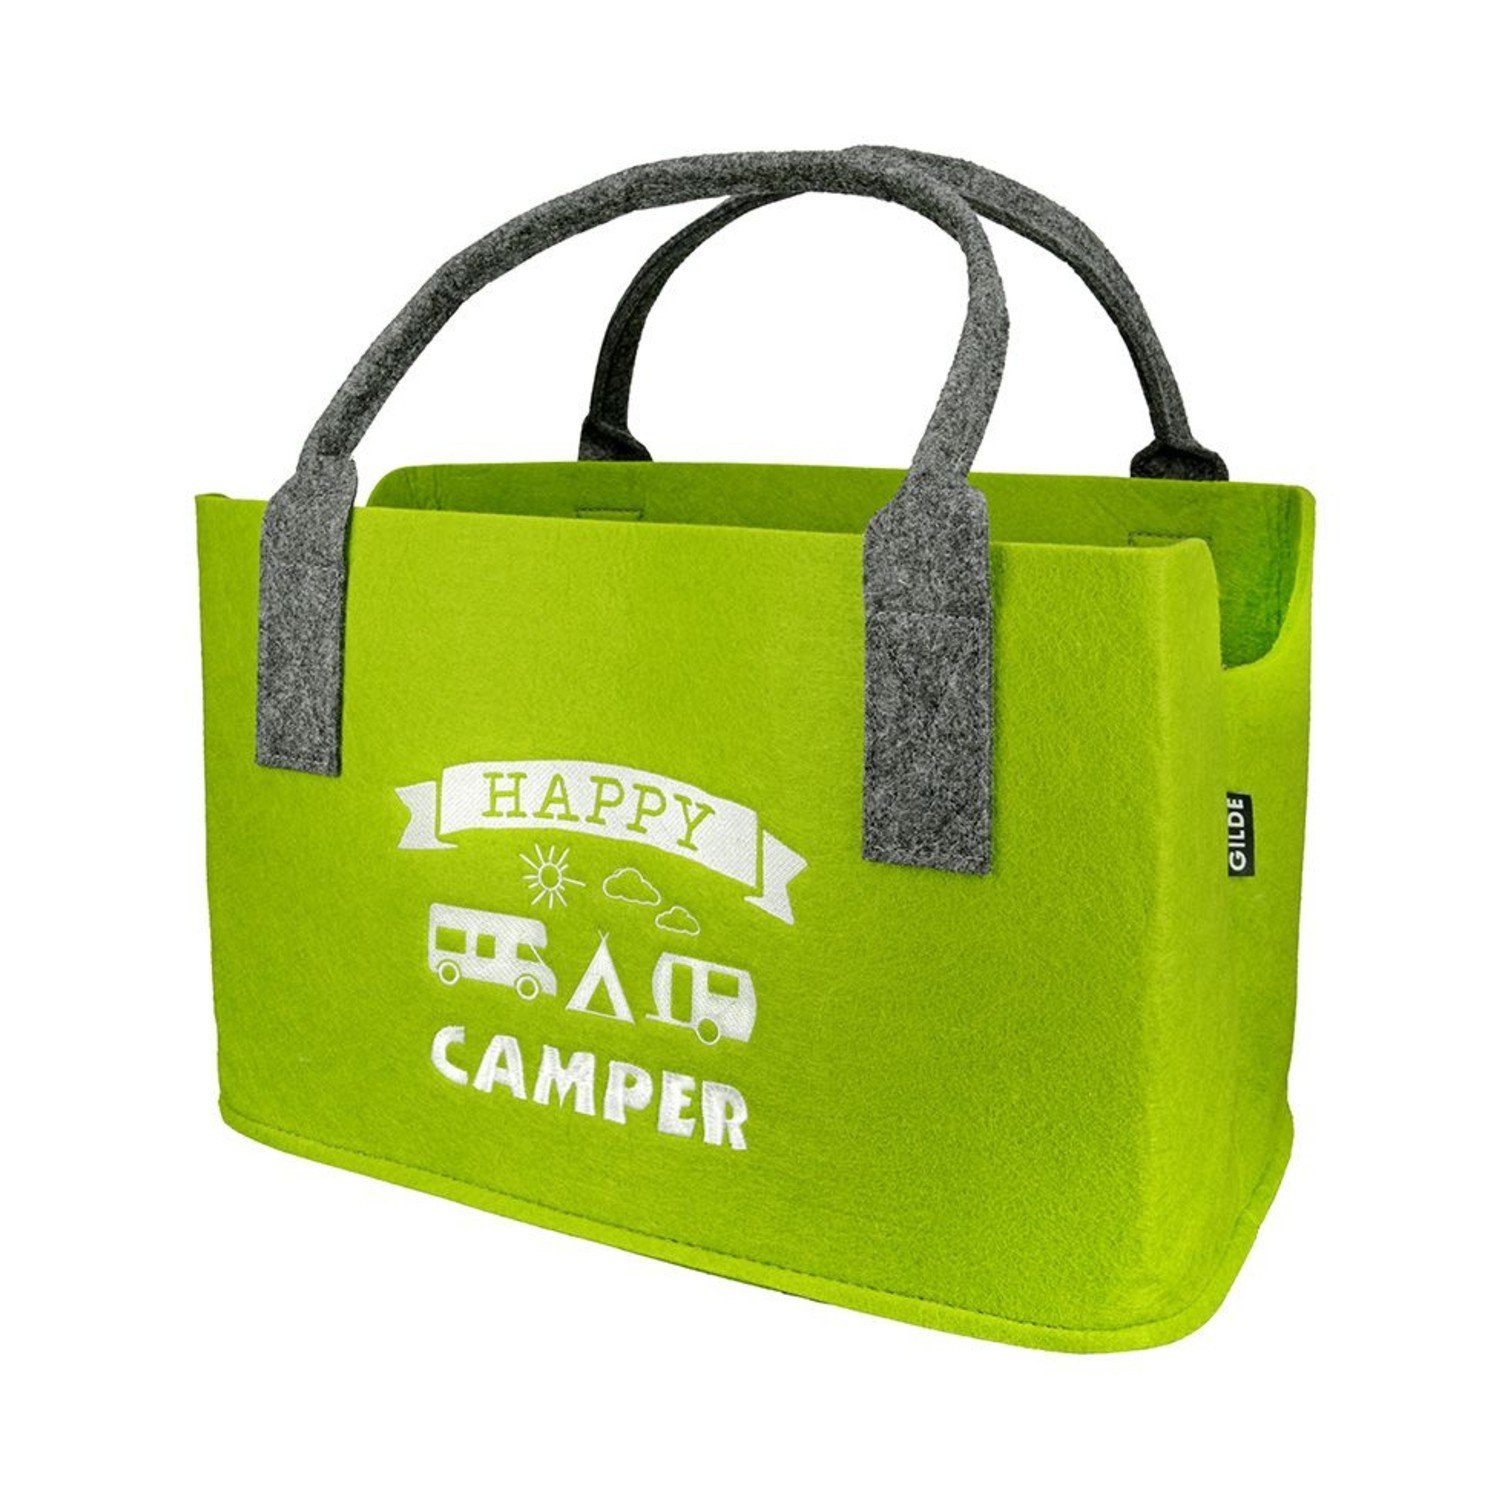 Camper GILDE Happy Tasche Shopper